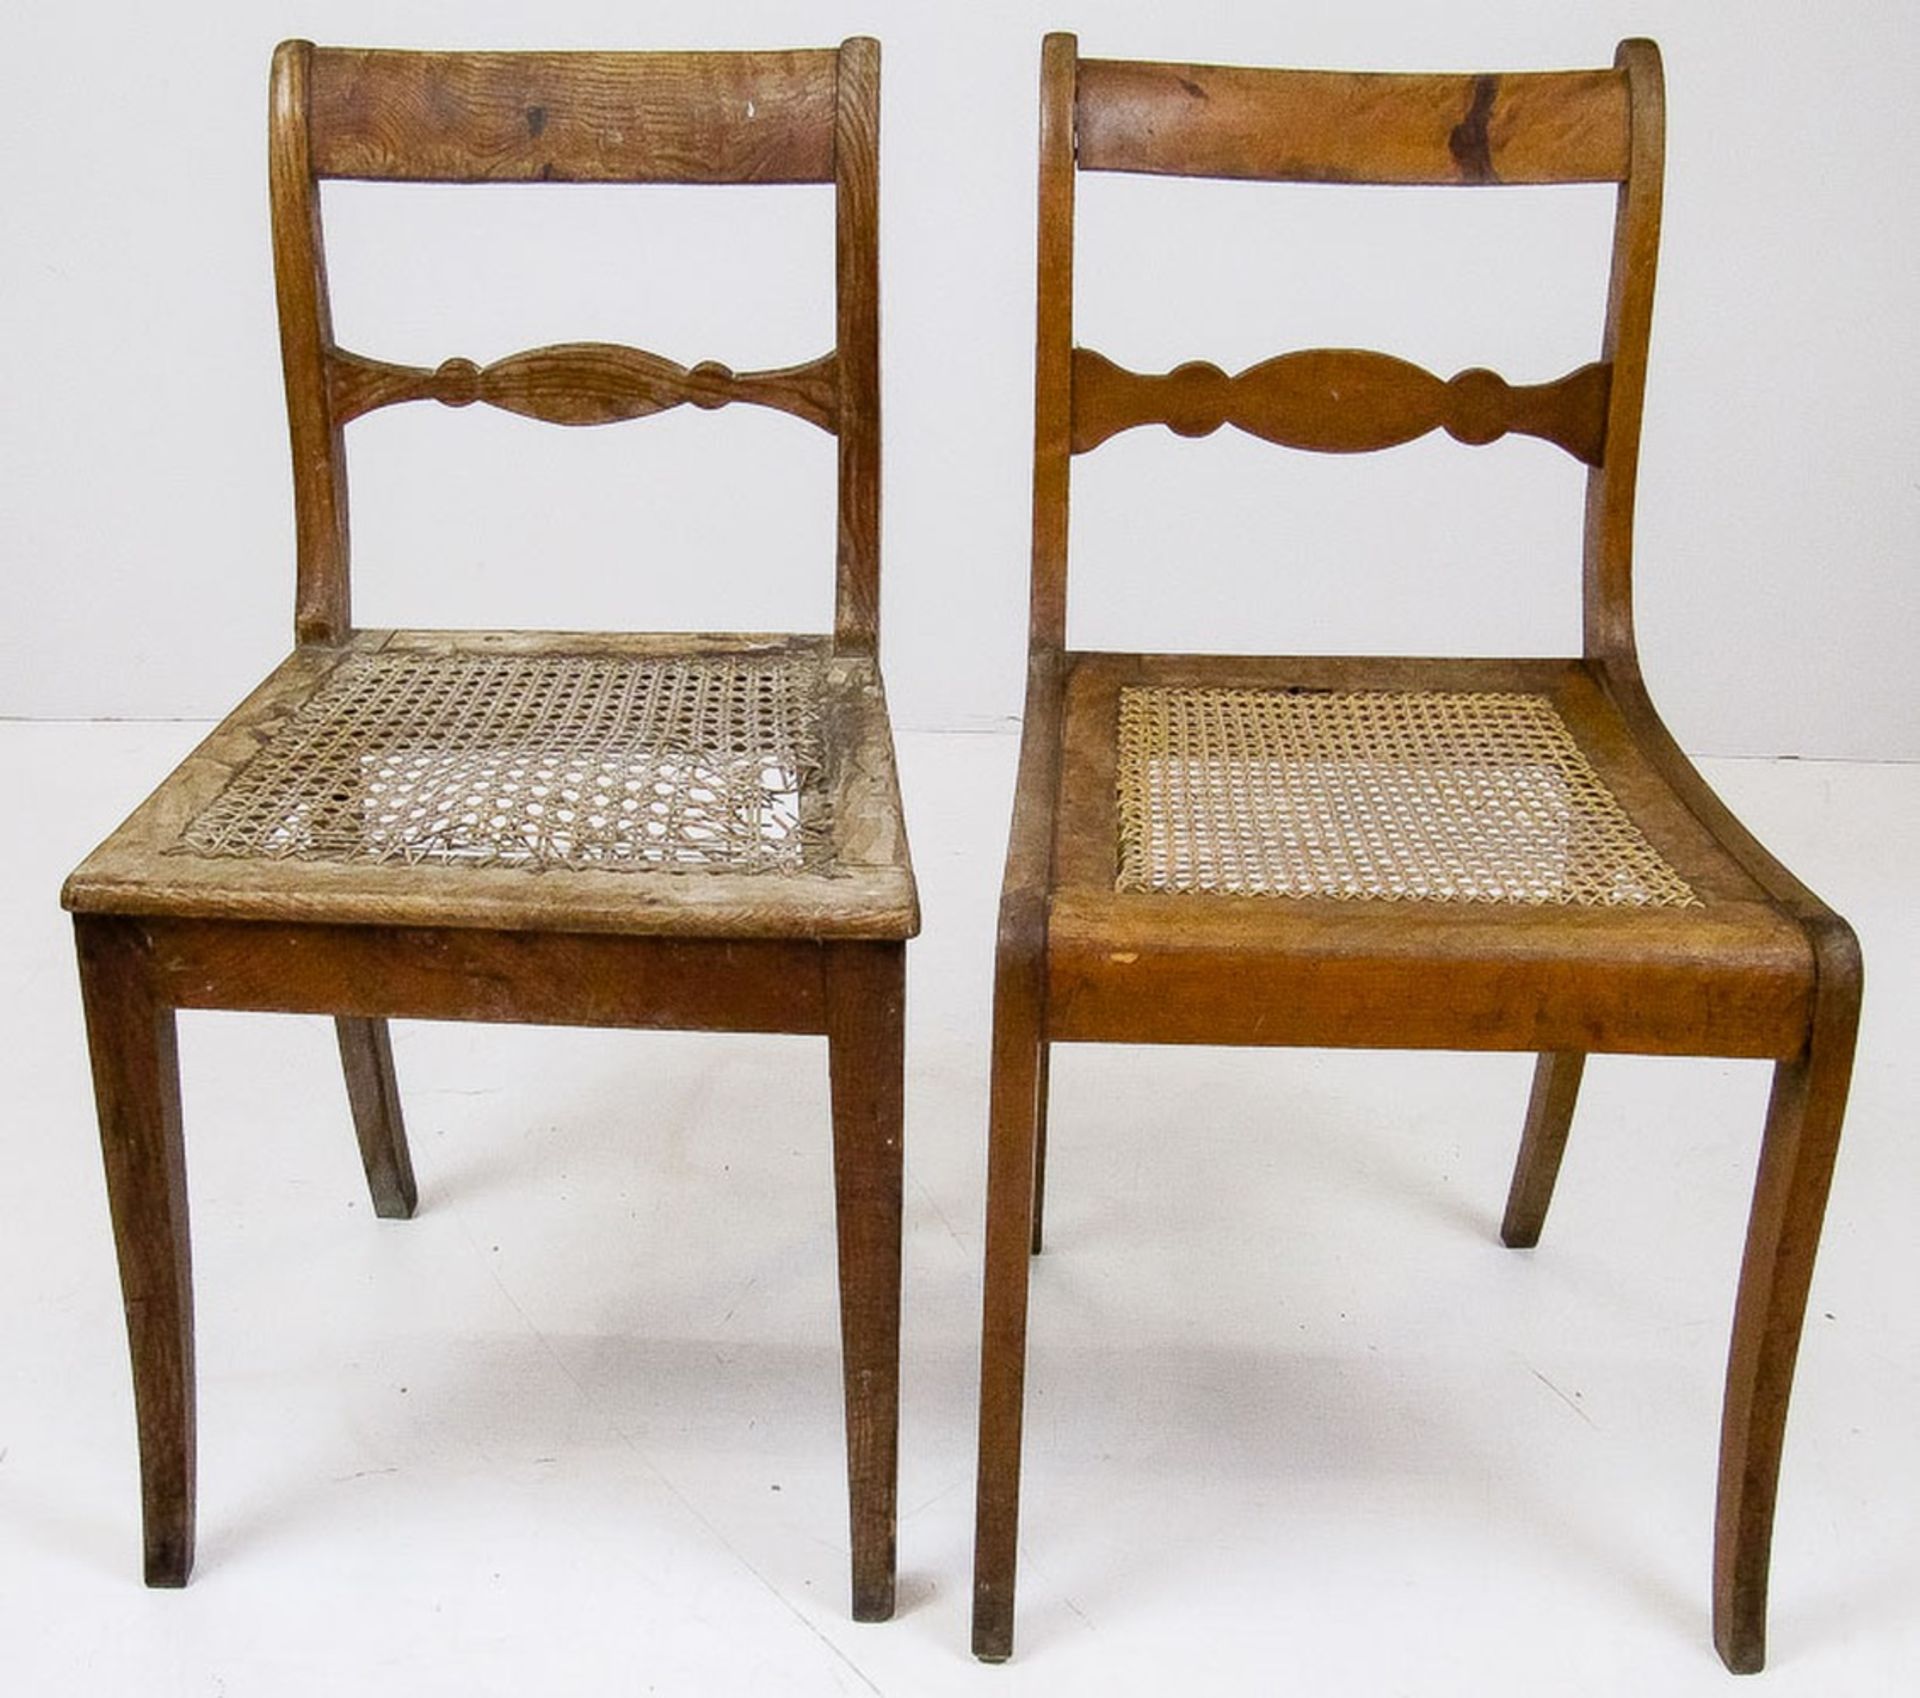 Zwei Biedermeier-Stühle